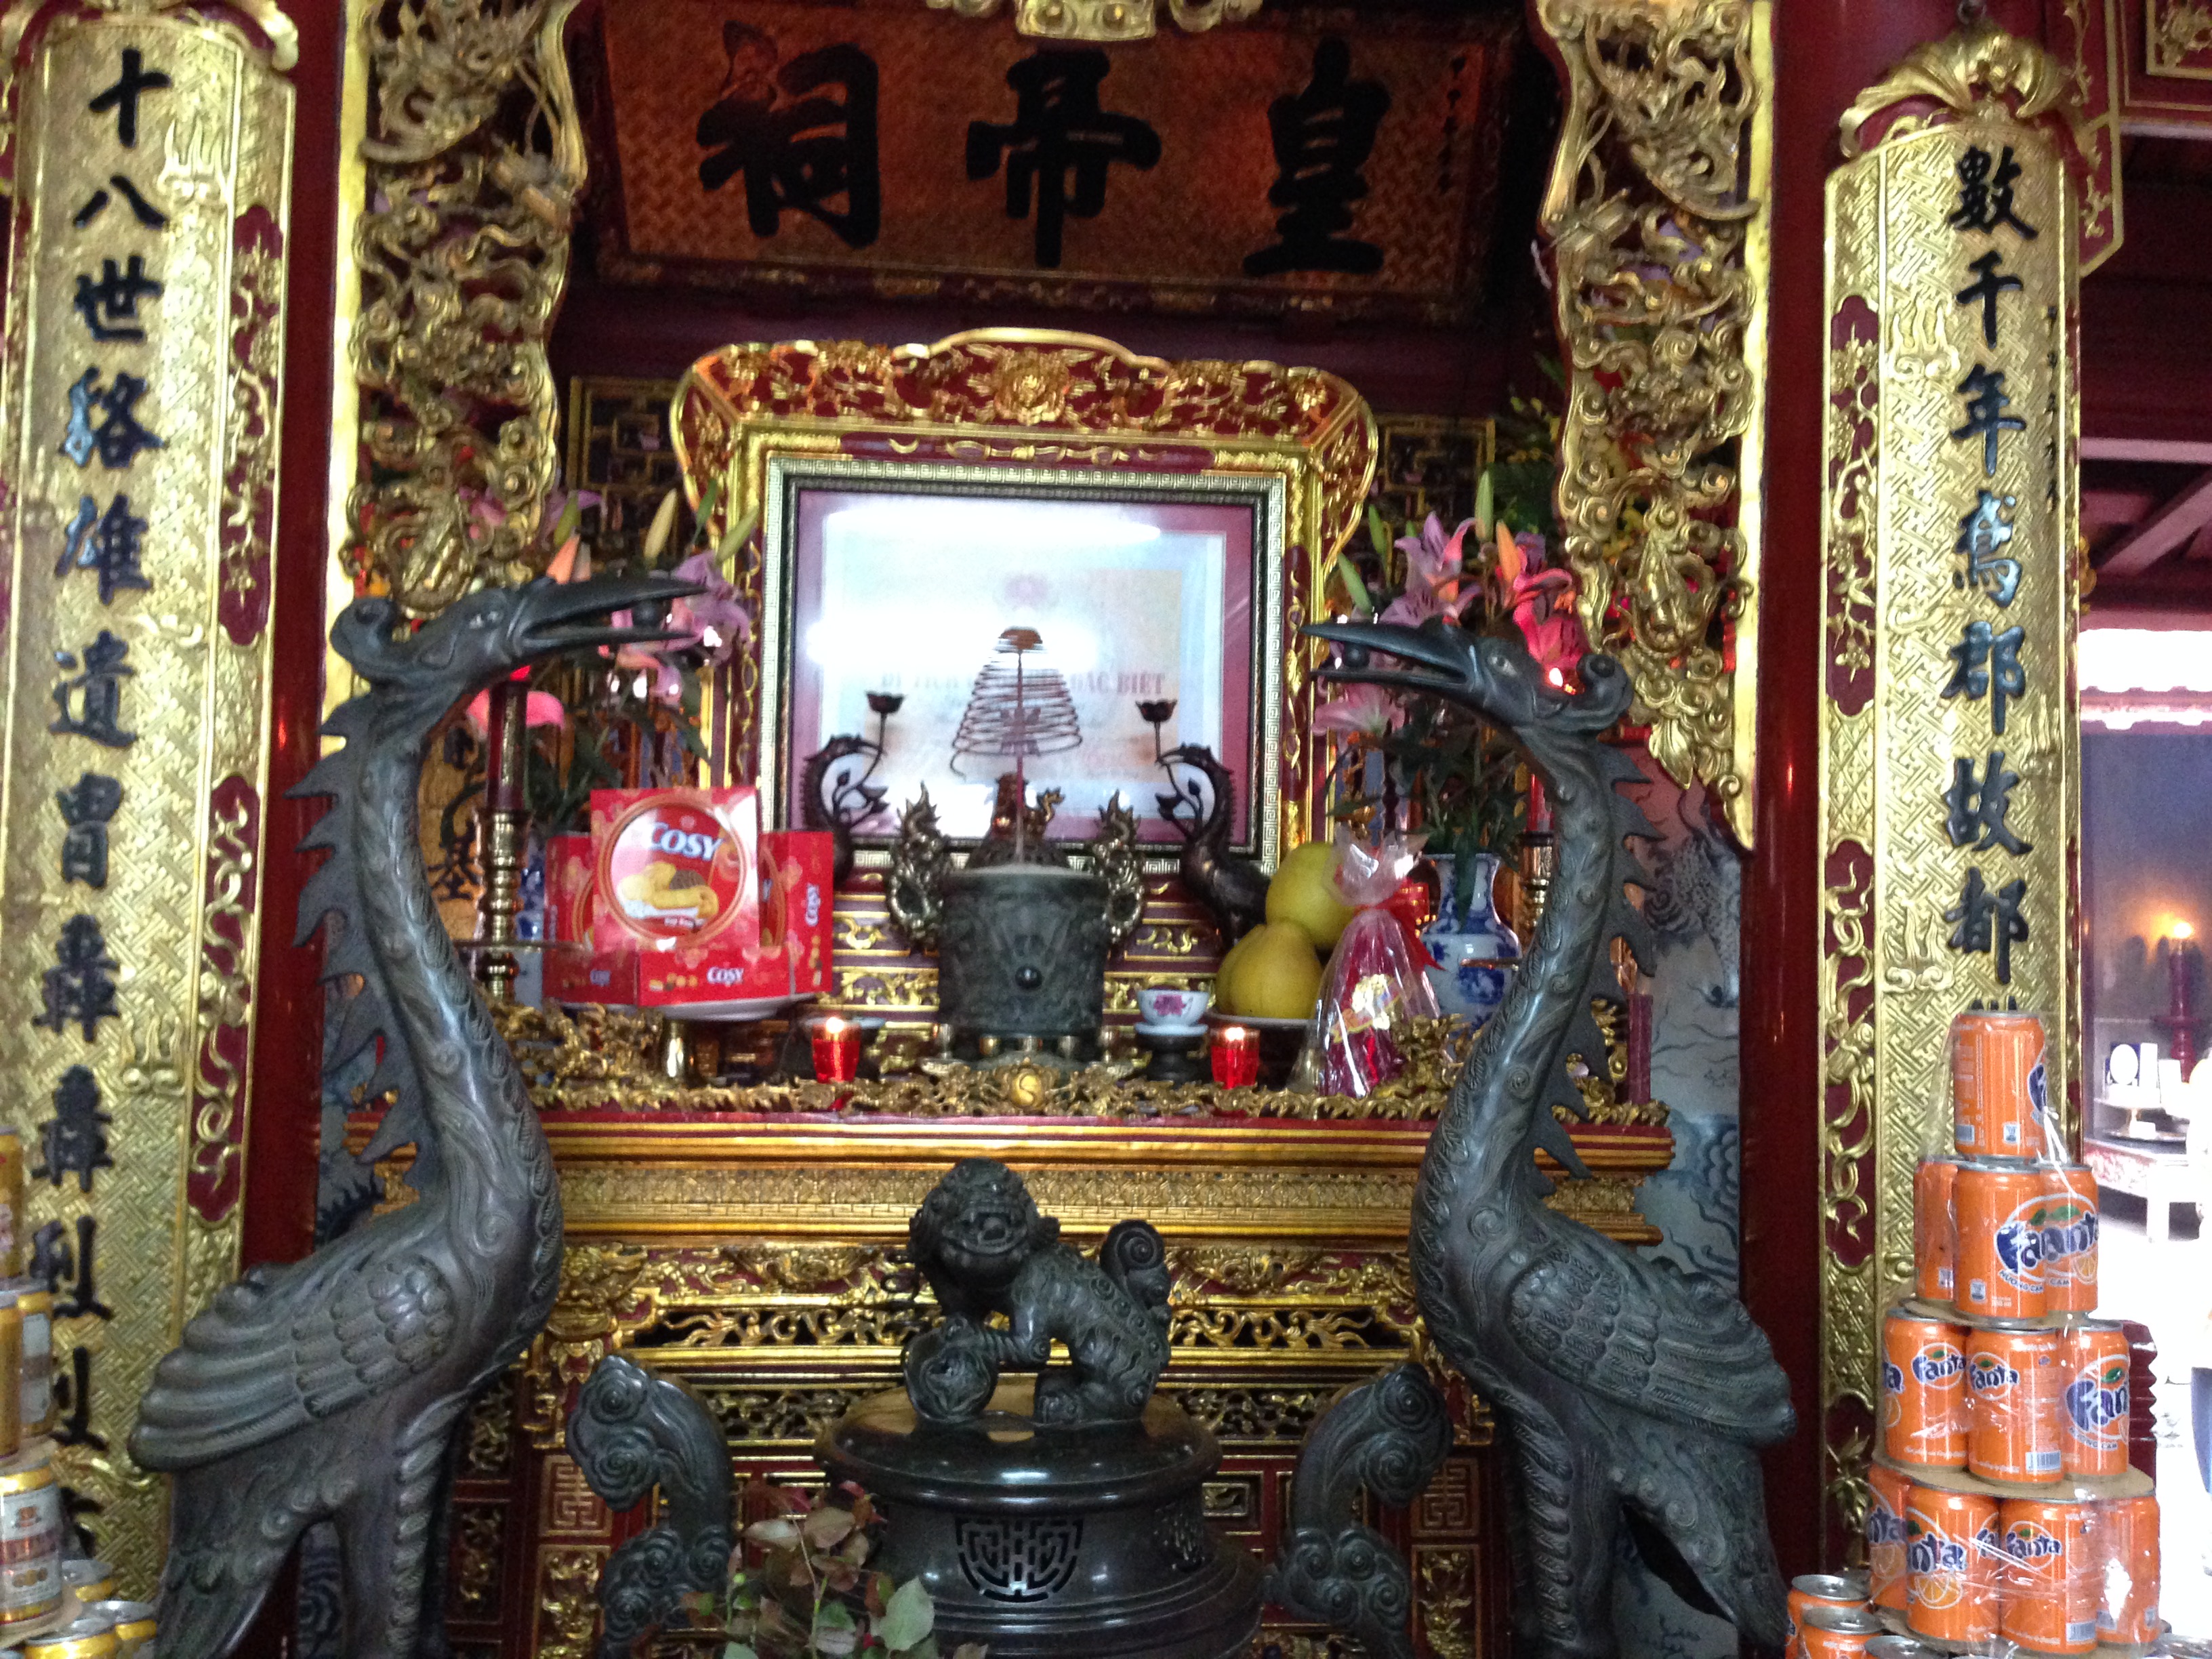 Du Xuân Hữu nghị 2016 (thăm đền thờ Hai Bà Trưng, đồng hoa tại Mê Linh Hà Nội) ngày 13/3/2016.